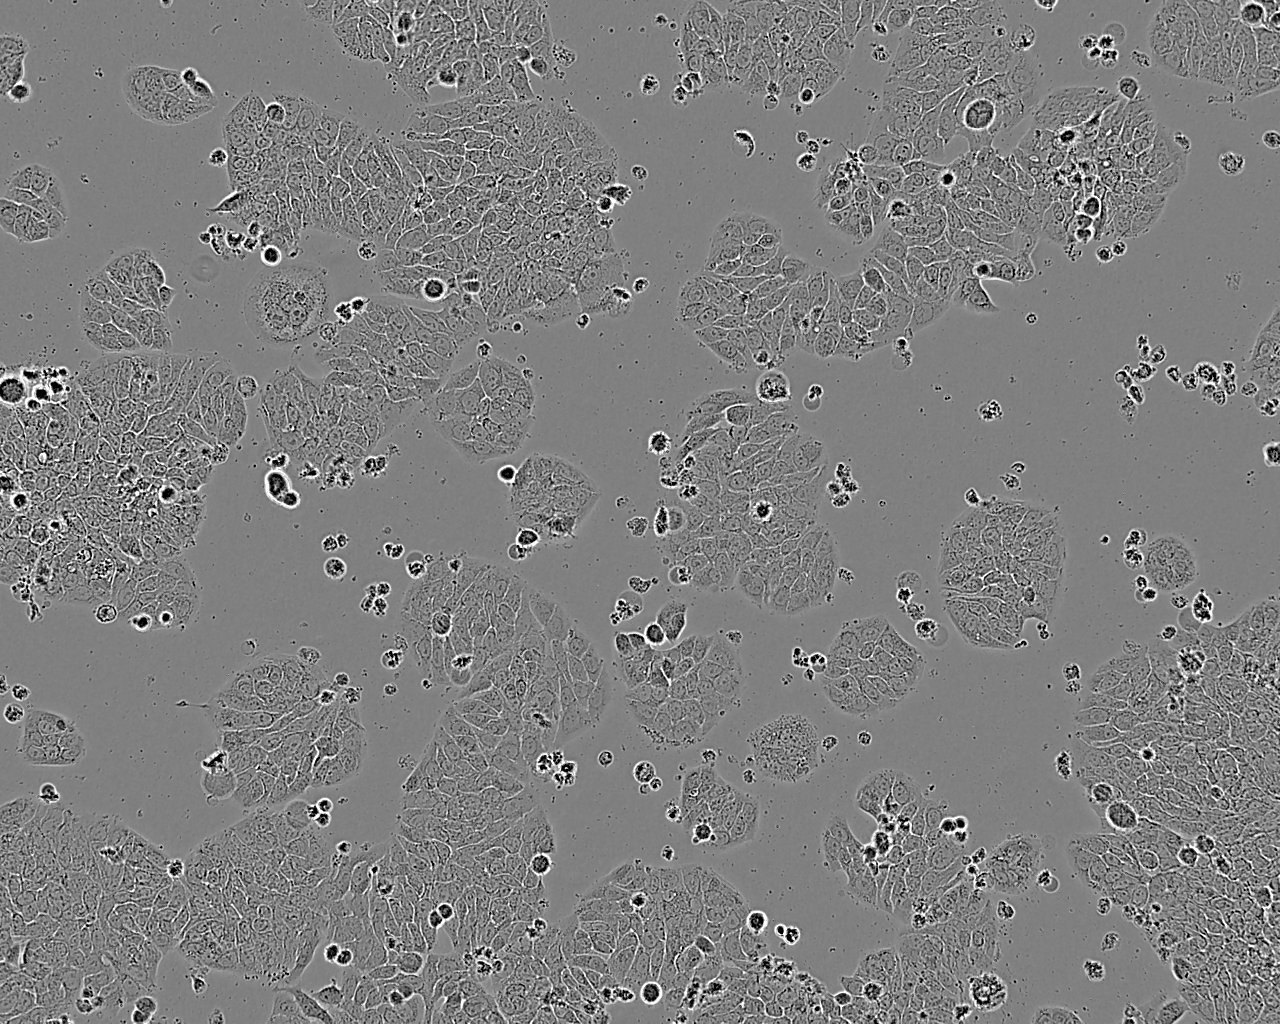 BAEC epithelioid cells牛主动脉内皮细胞系,BAEC epithelioid cells